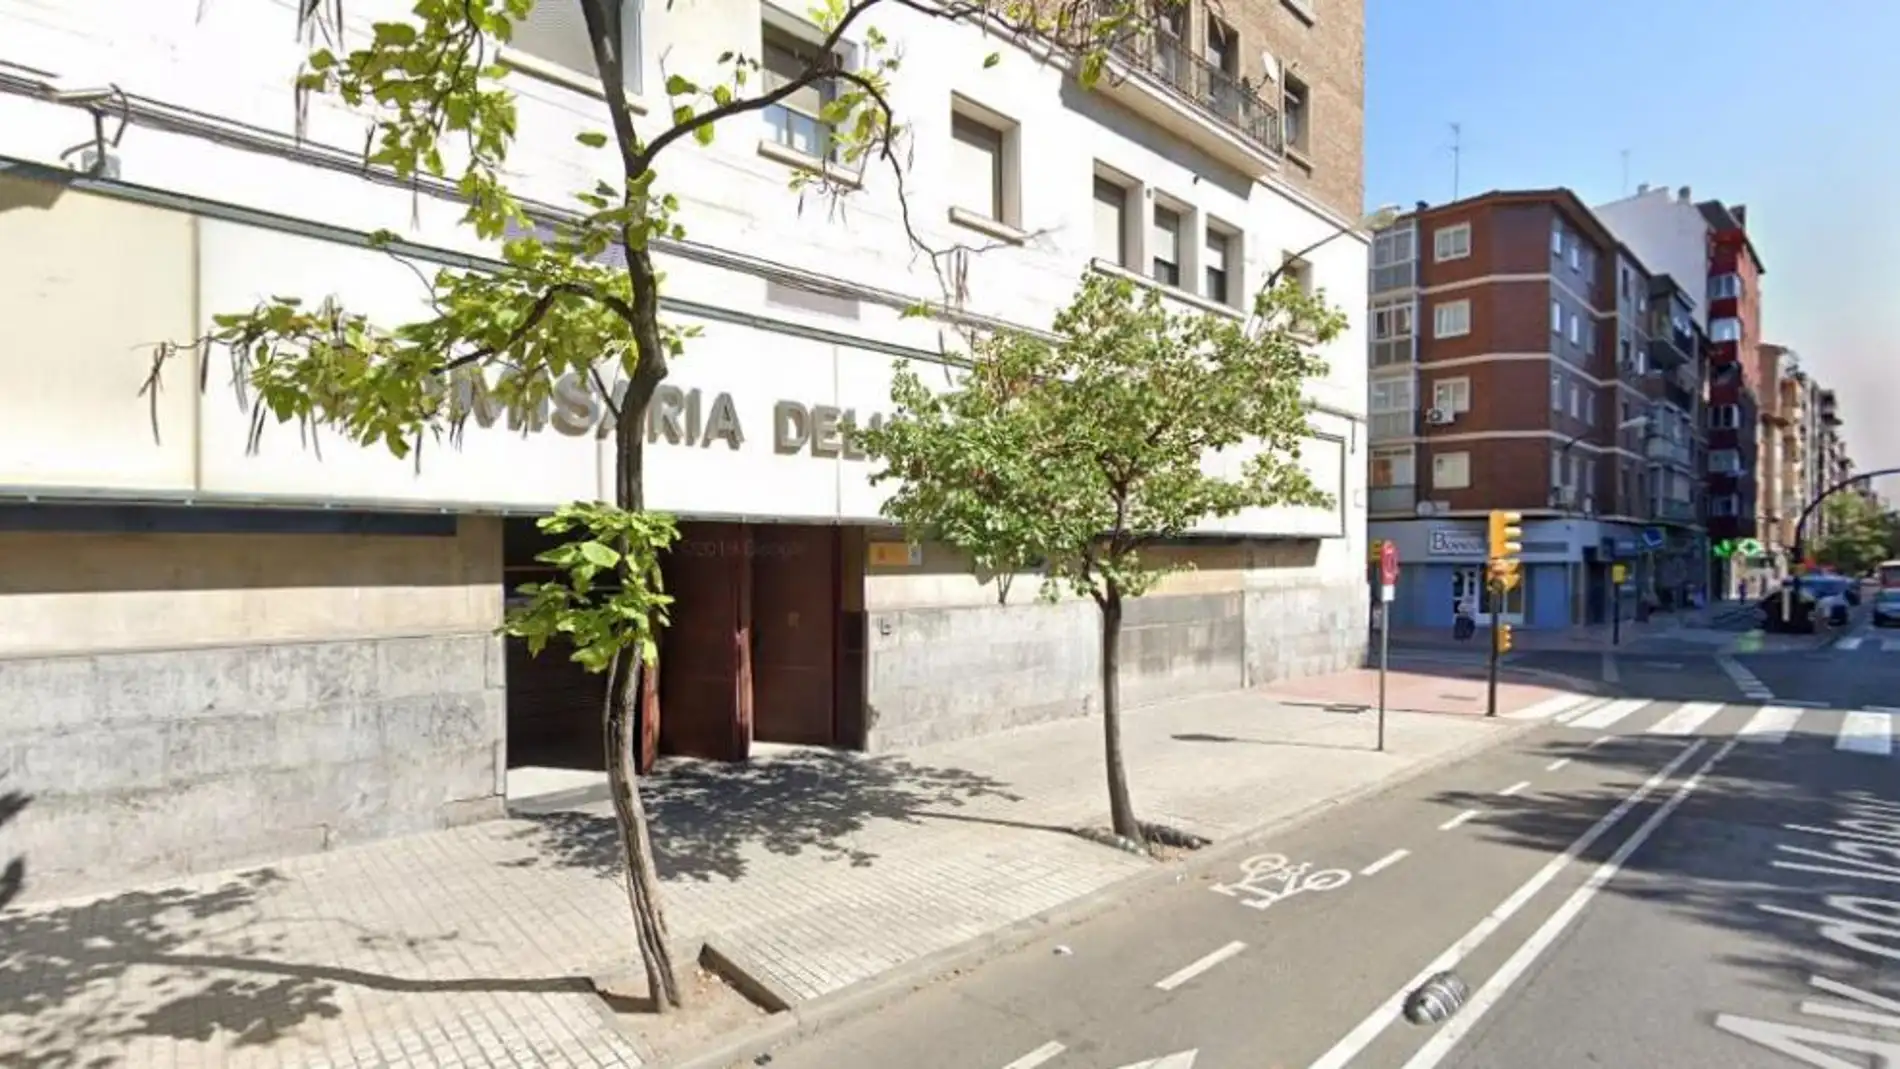 Imagen exterior de la Comisaría de Delicias, en Zaragoza